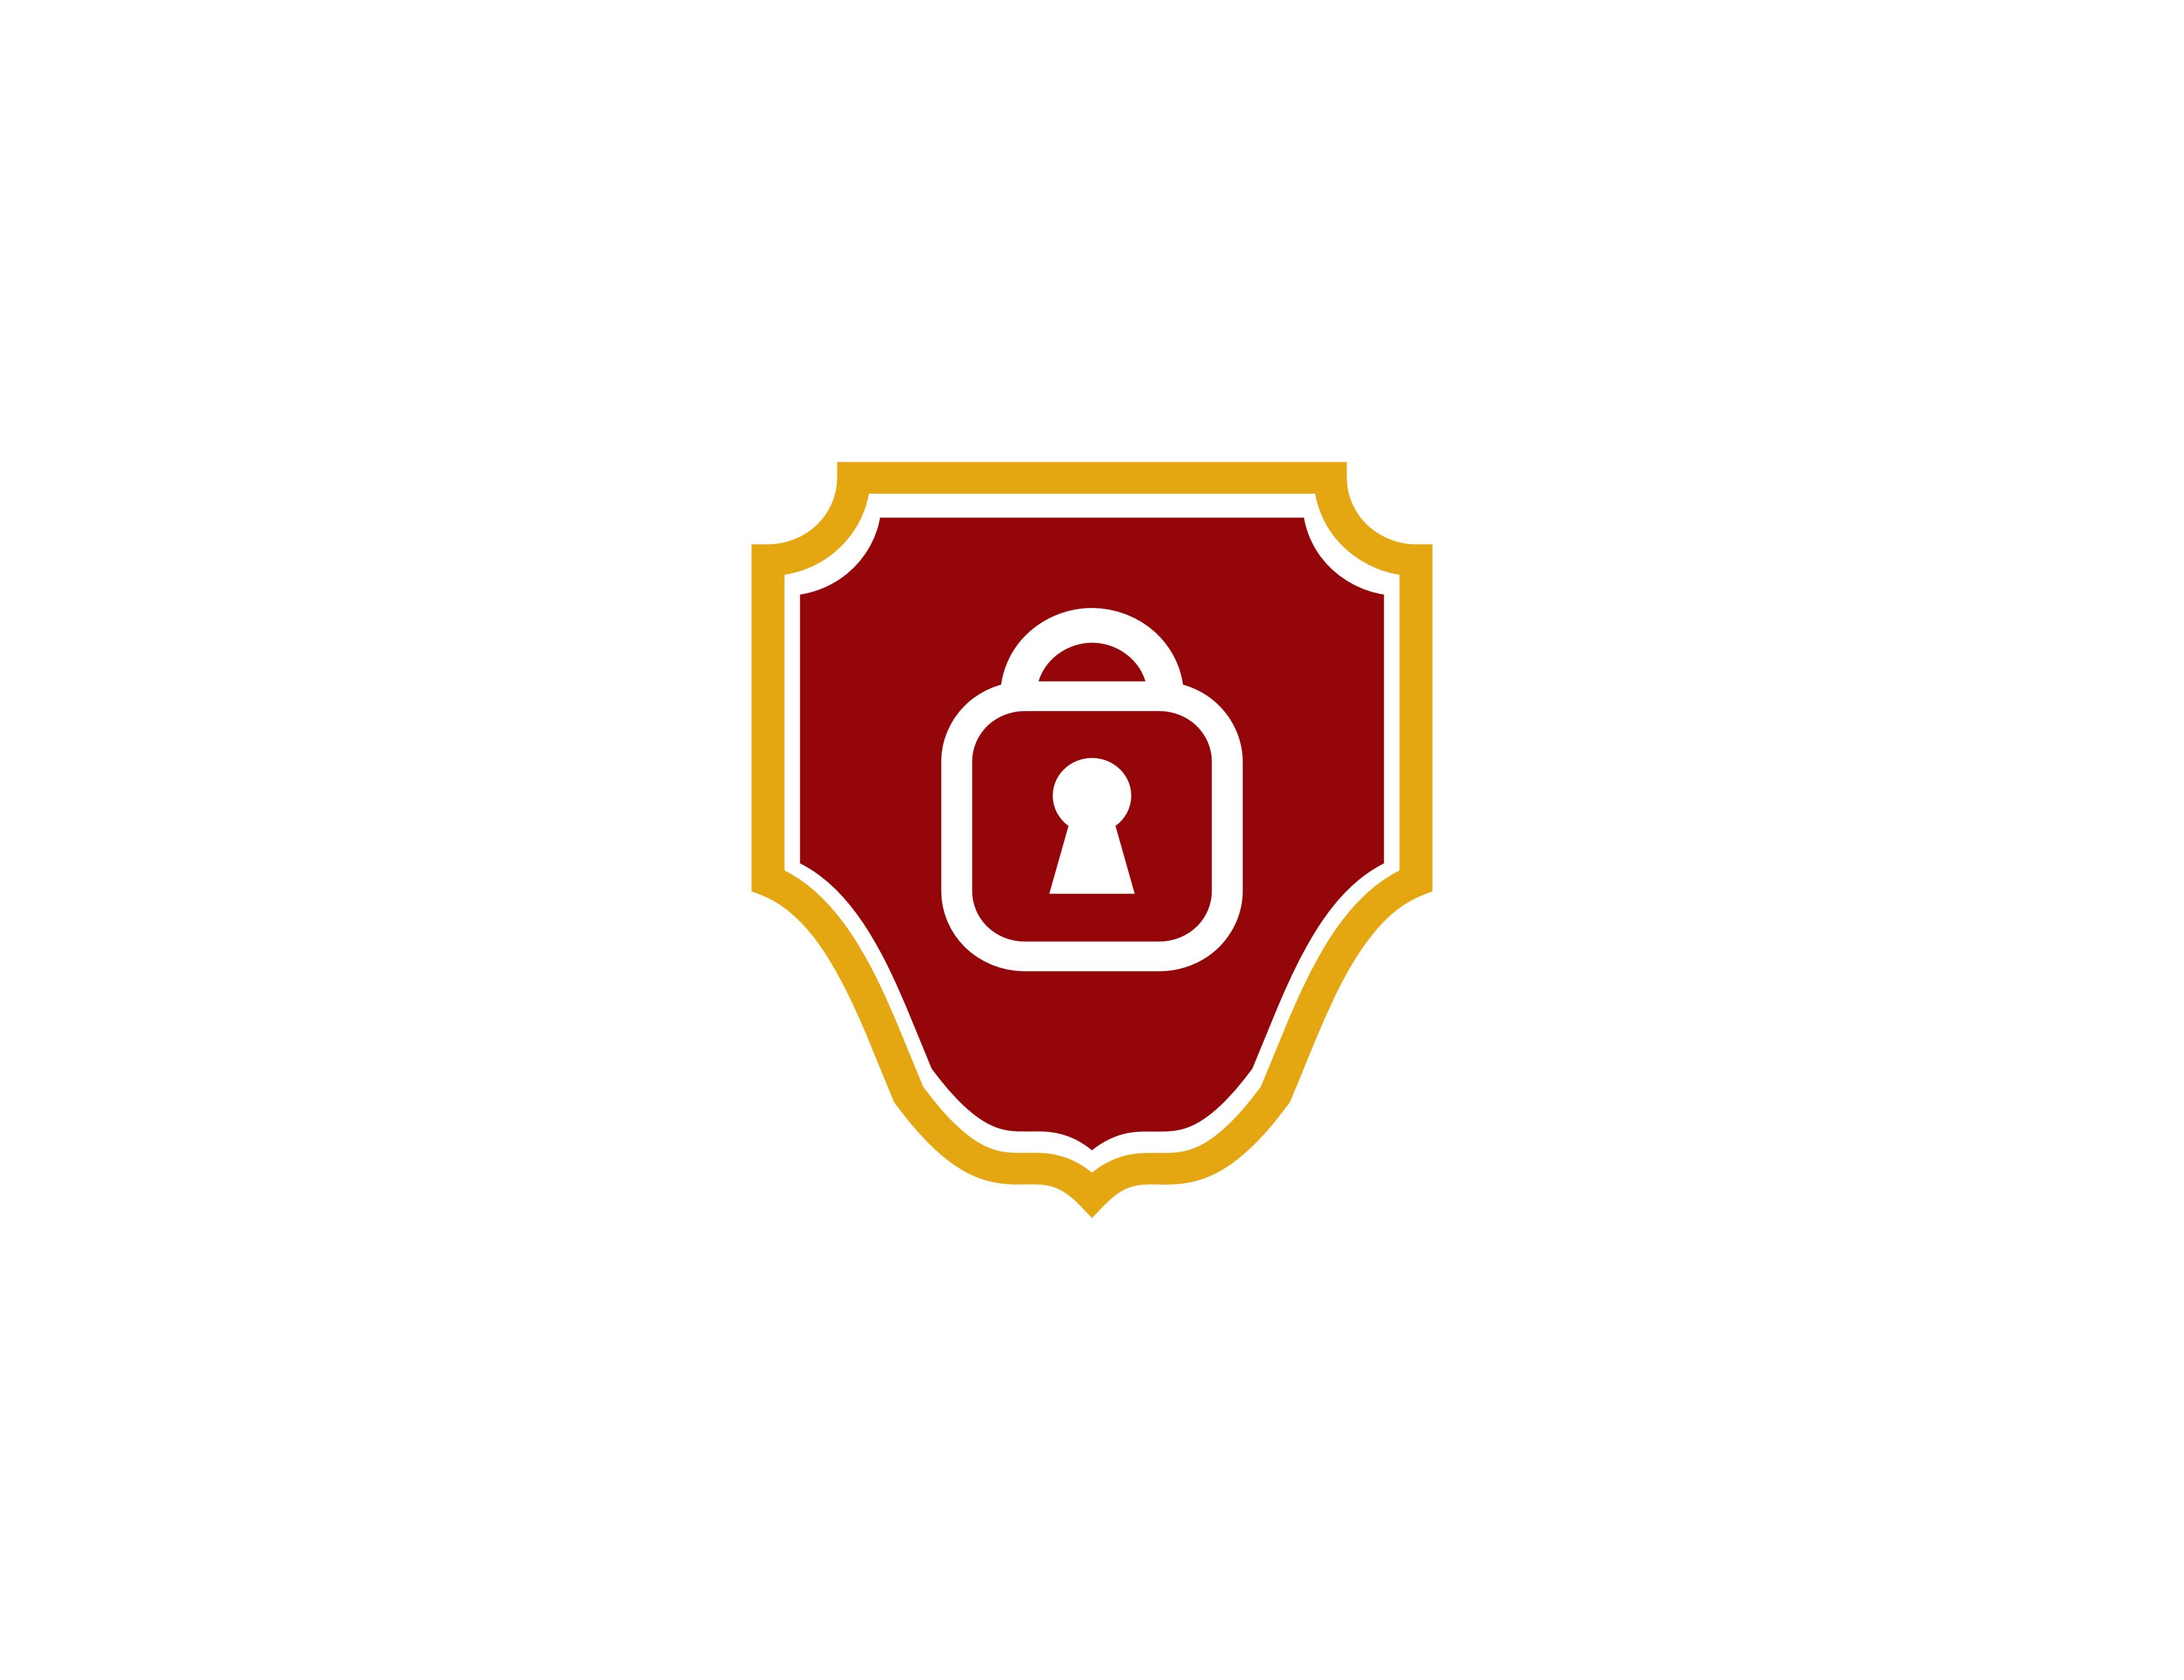 Security Shield Logo - Security shield logo Graphic by meisuseno - Creative Fabrica